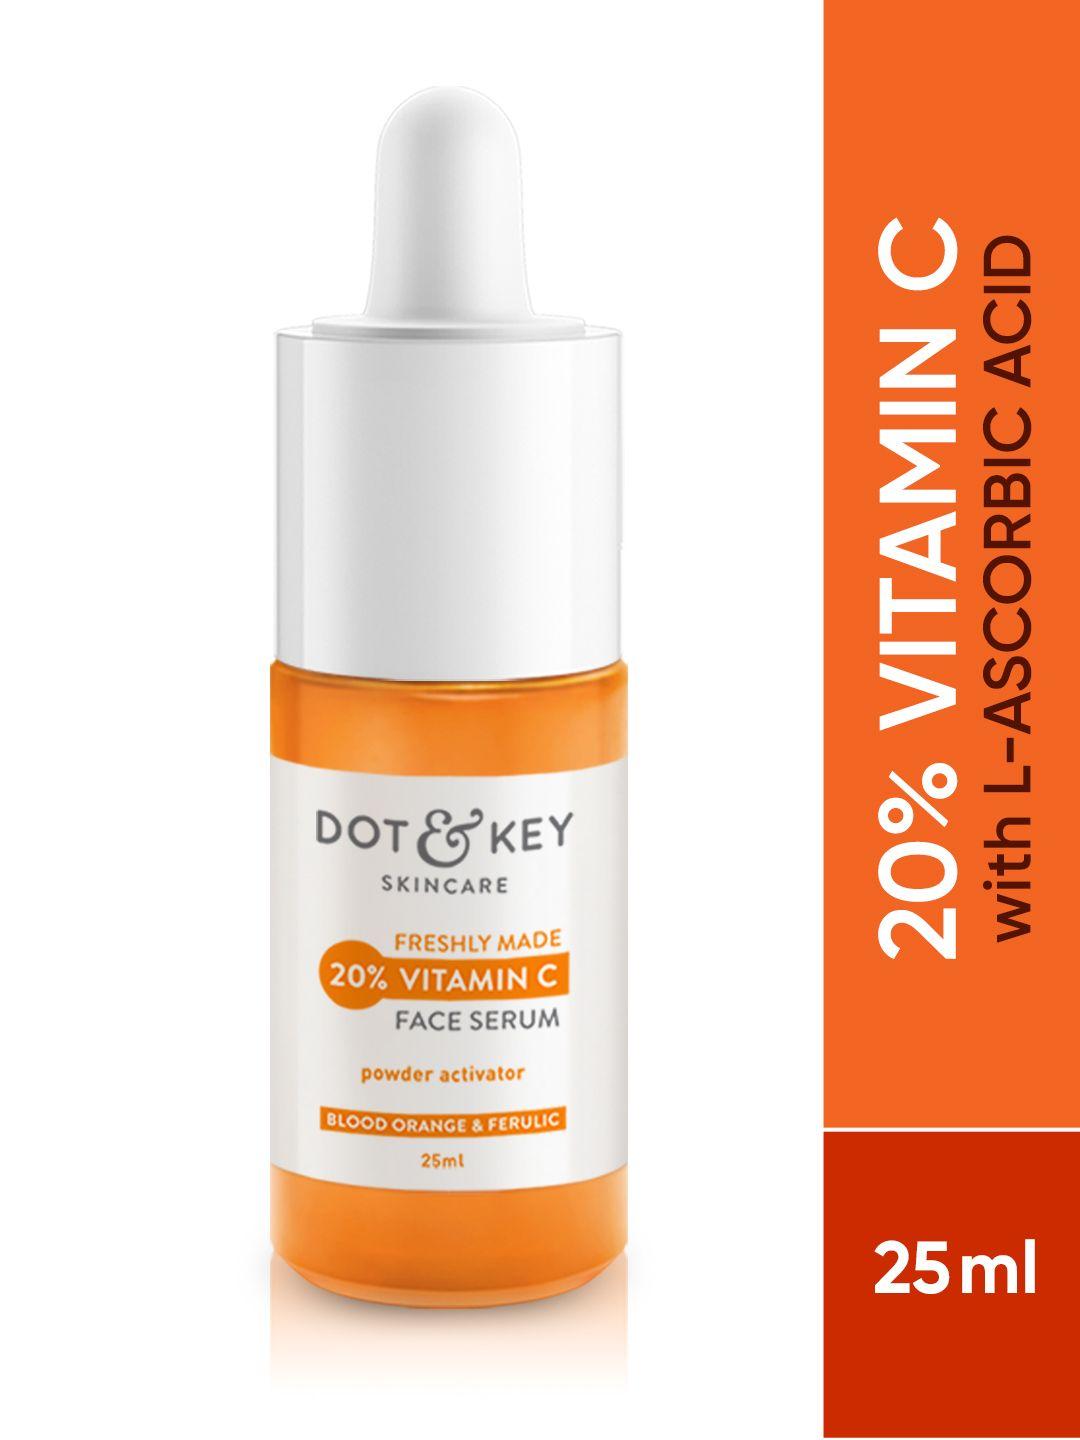 dot-&-key-20%-vitamin-c-face-serum-with-blood-orange-&-l-ascorbic-for-glowing-skin---25-ml